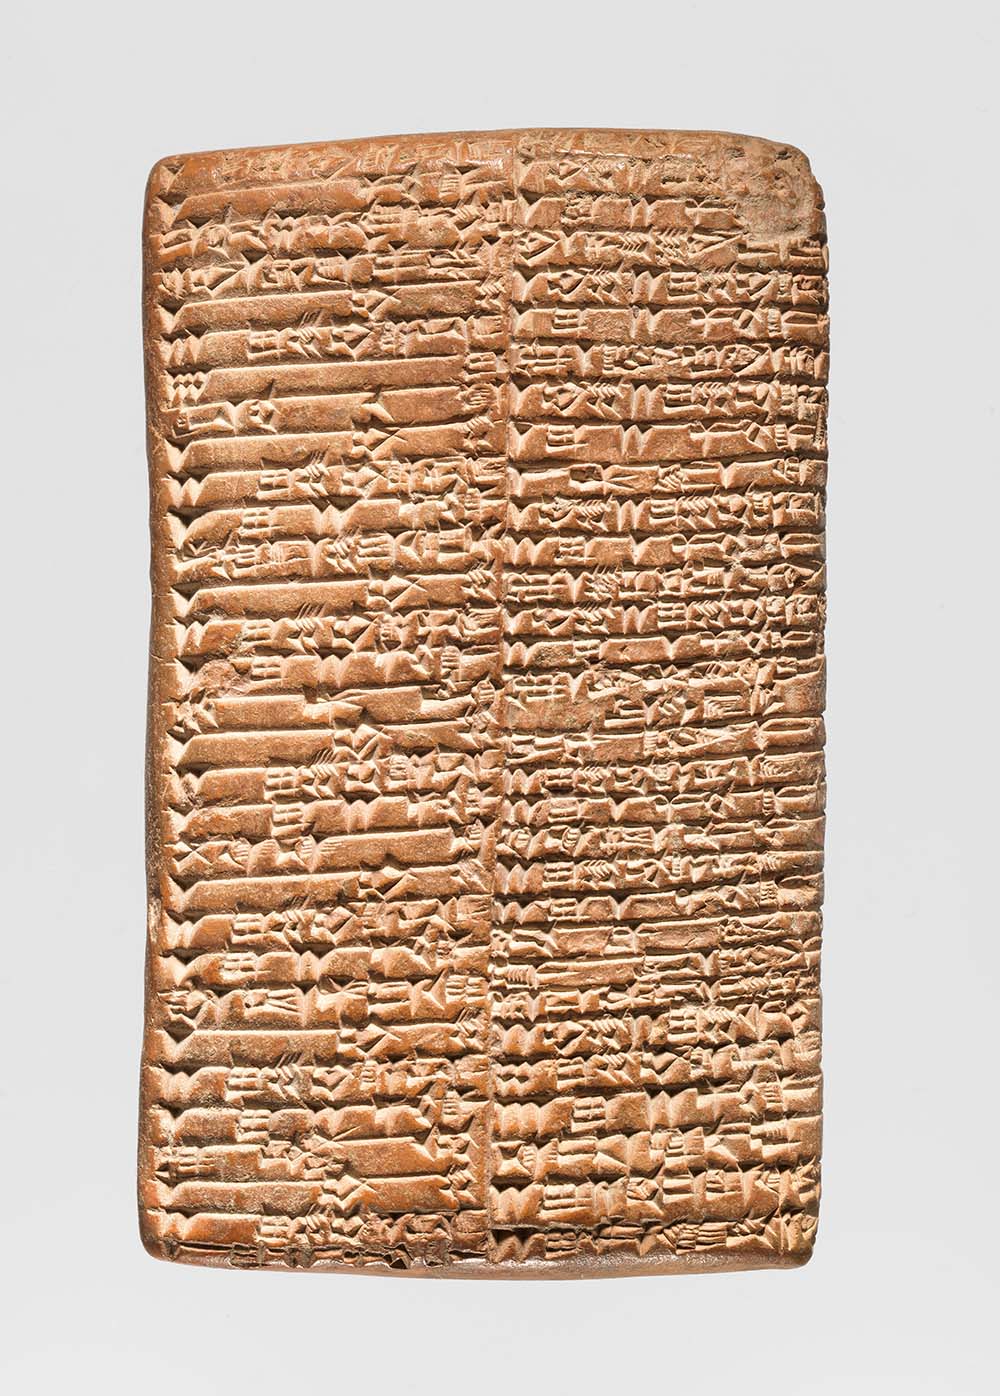 Cuneiform tablet, Neo-Sumerian, c. 2043 BC. 